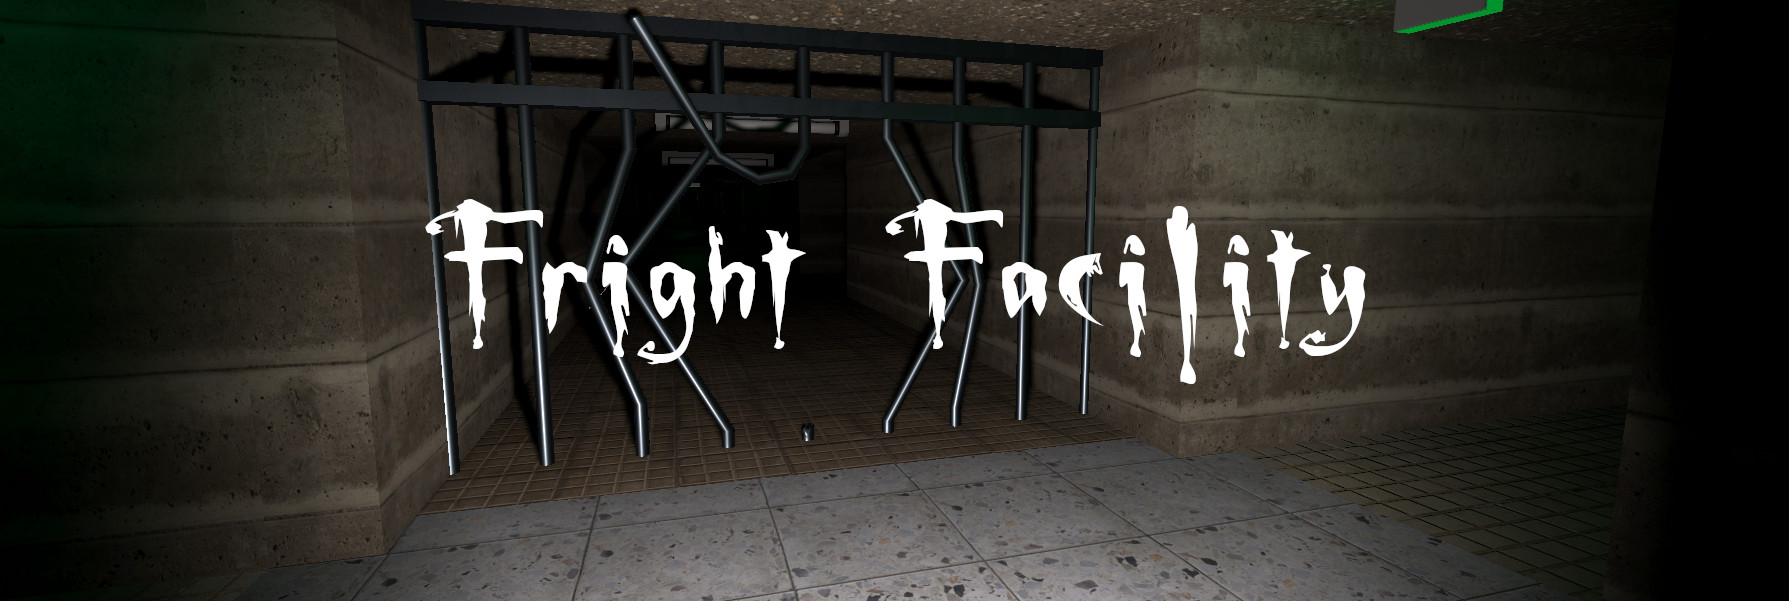 Fright Facility